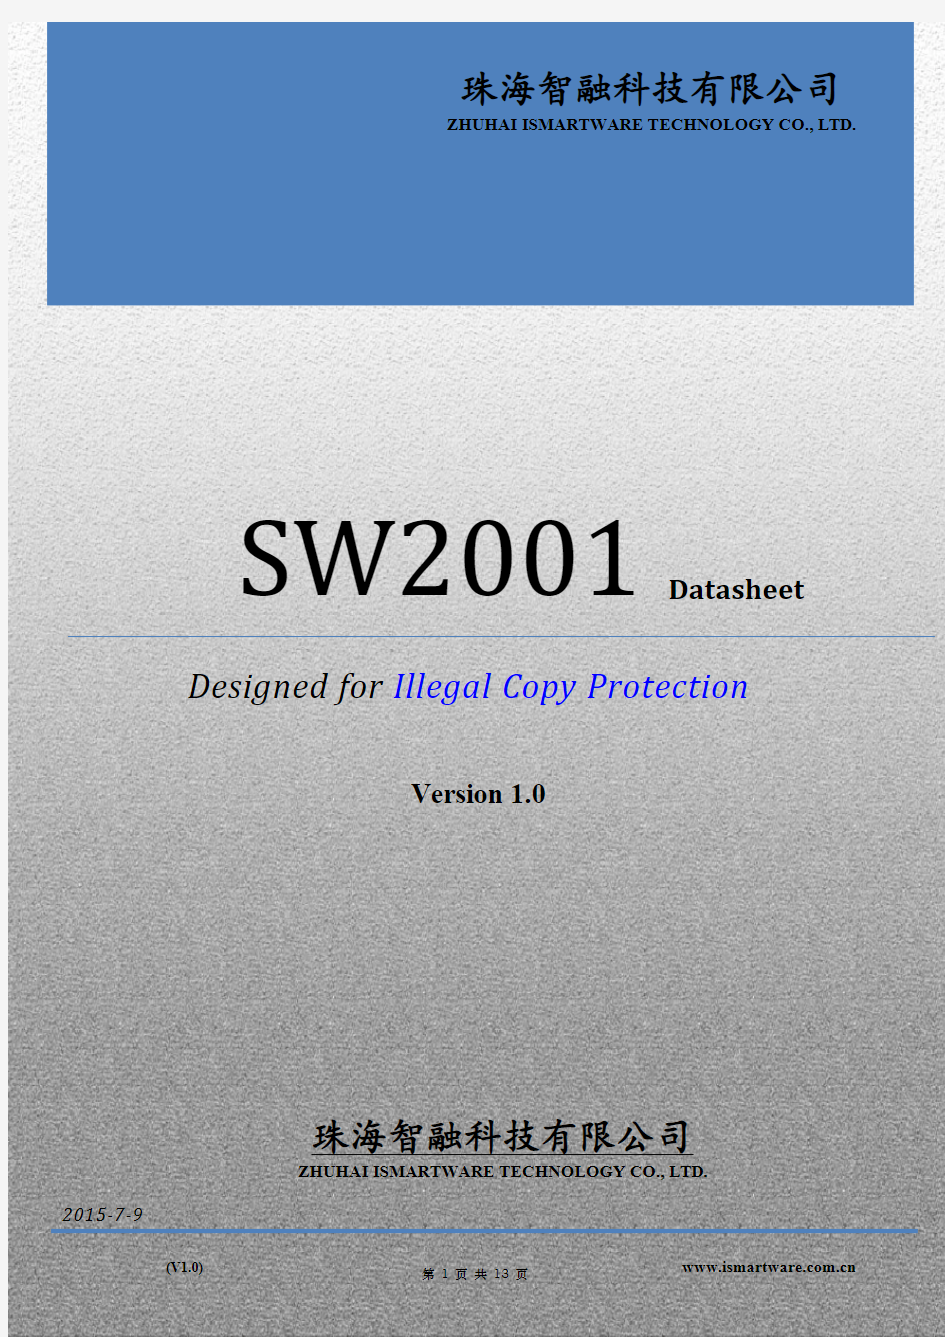 SW2001 Datasheet V1.0